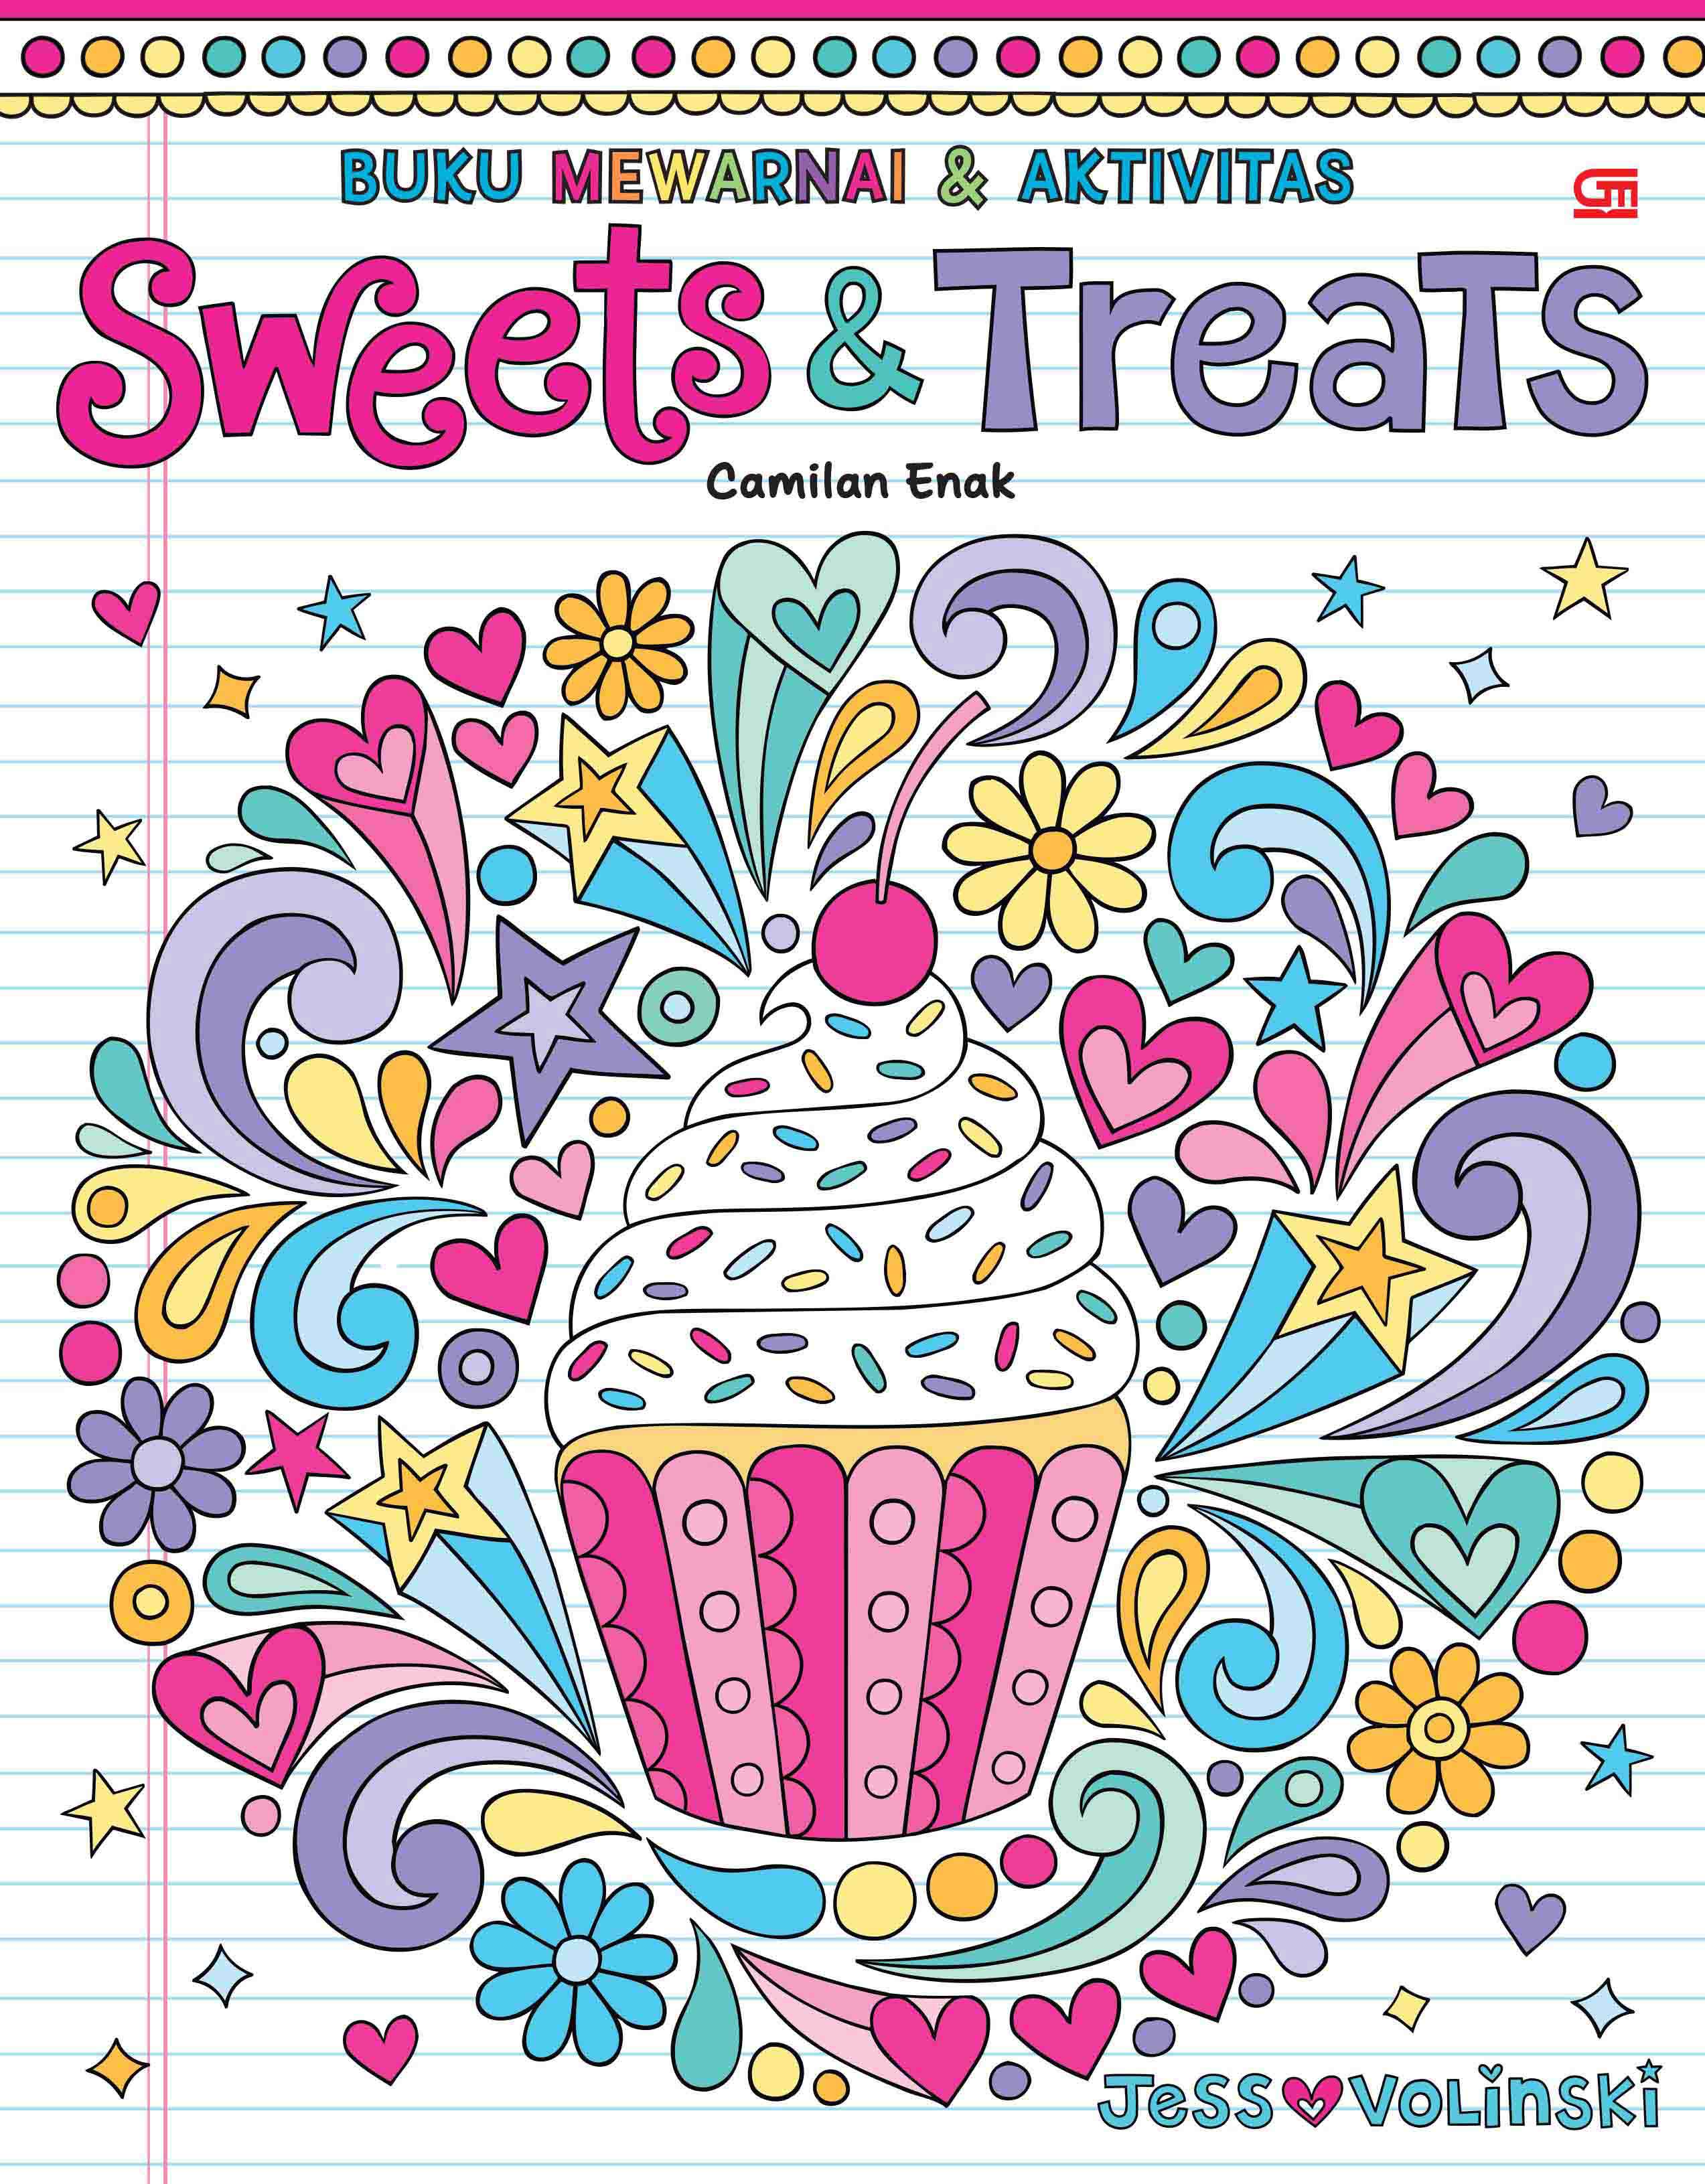 Buku Mewarnai dan Aktivitas: Camilan Enak (Sweets & Treats)